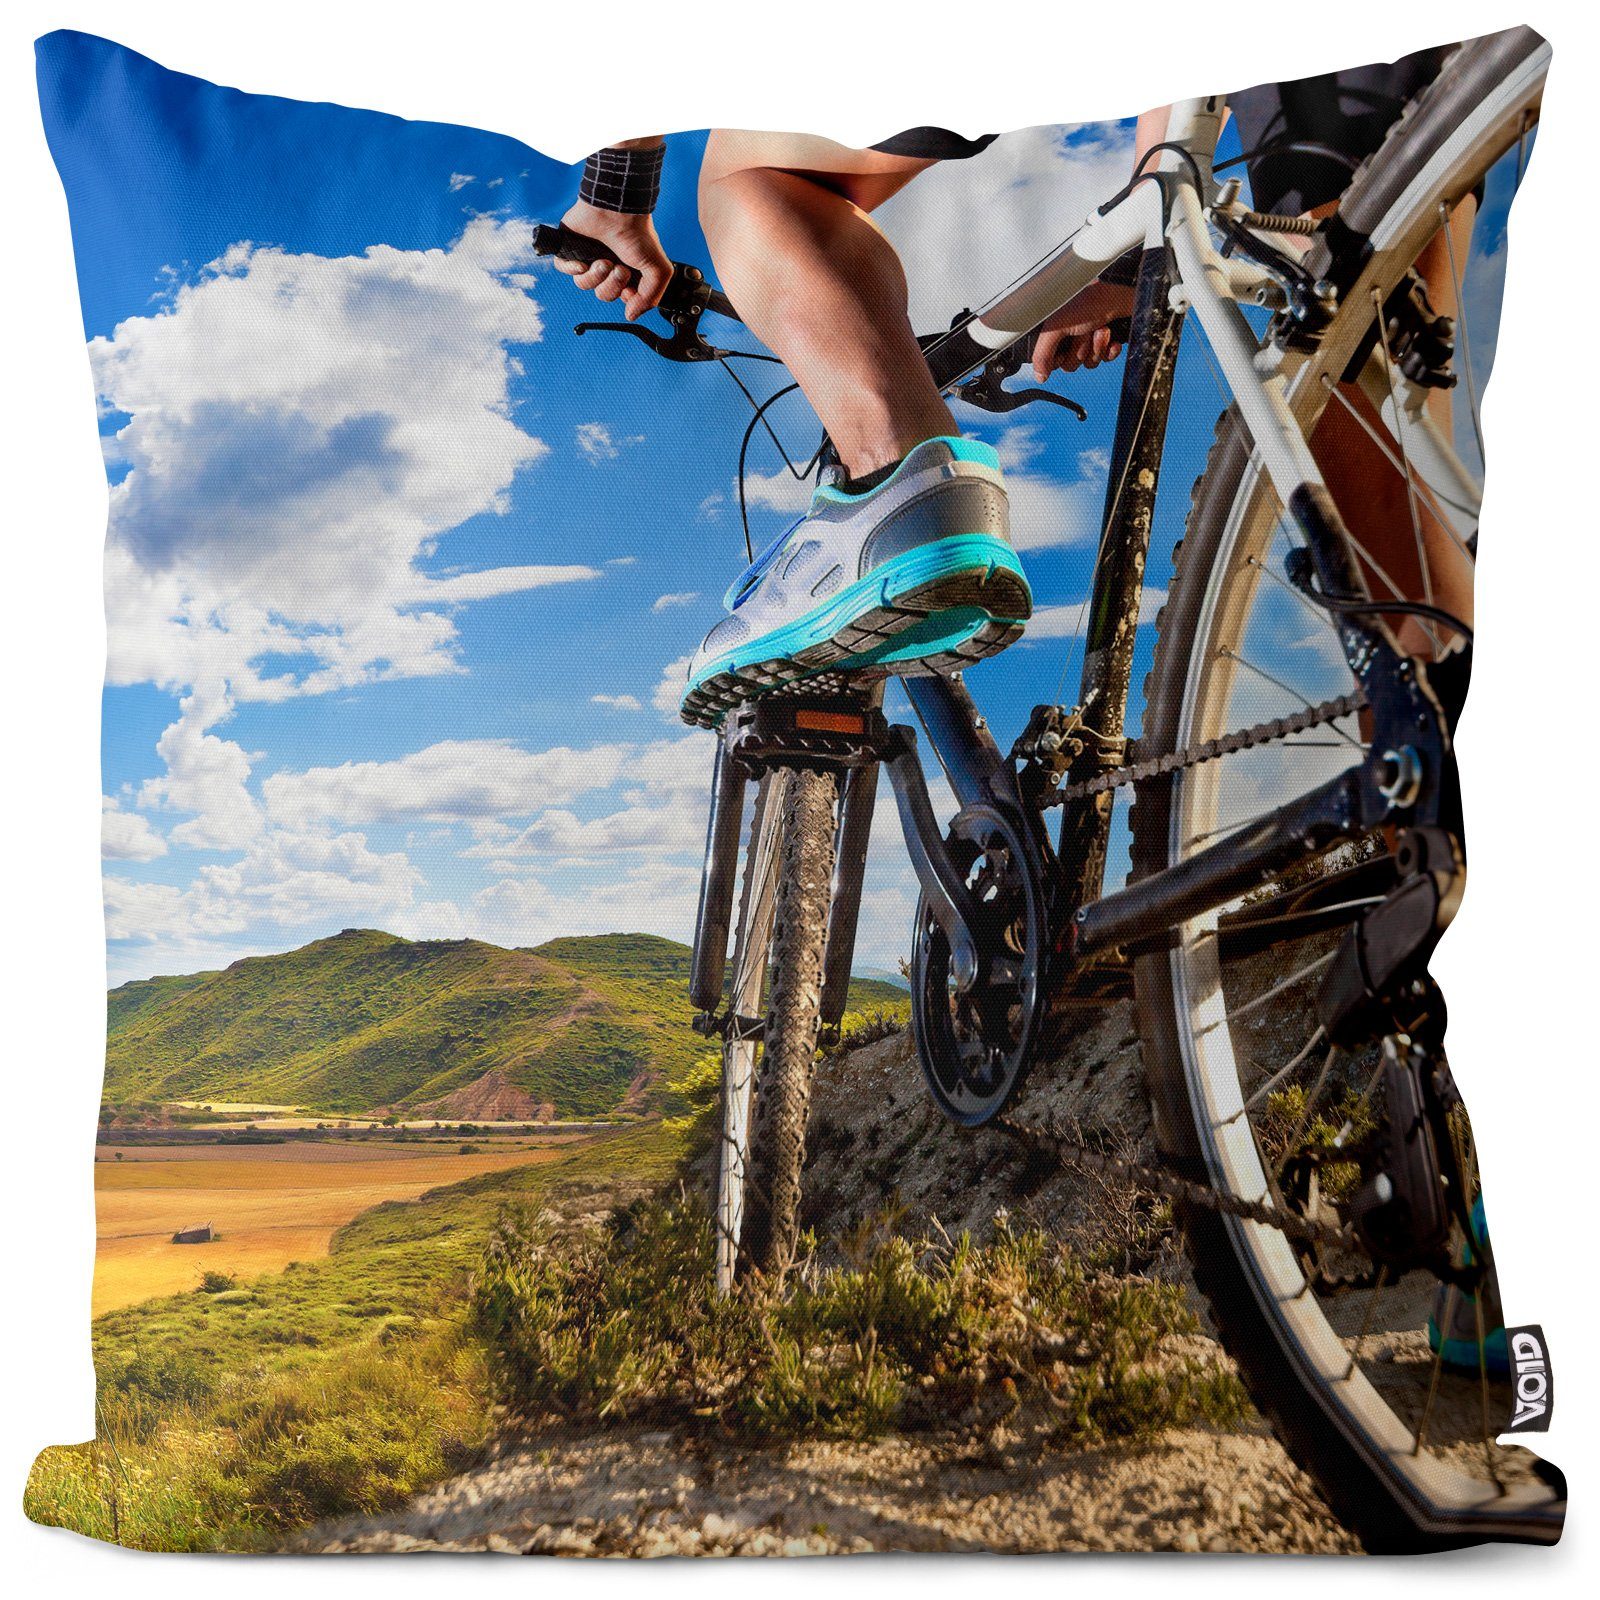 Kissenbezug, VOID (1 Stück), Sofa-Kissen Fahrrad fahren Mountain Bike Rad Tour Sport radeln Landschaft Ausflug Berge Reise Urlaub Sommer